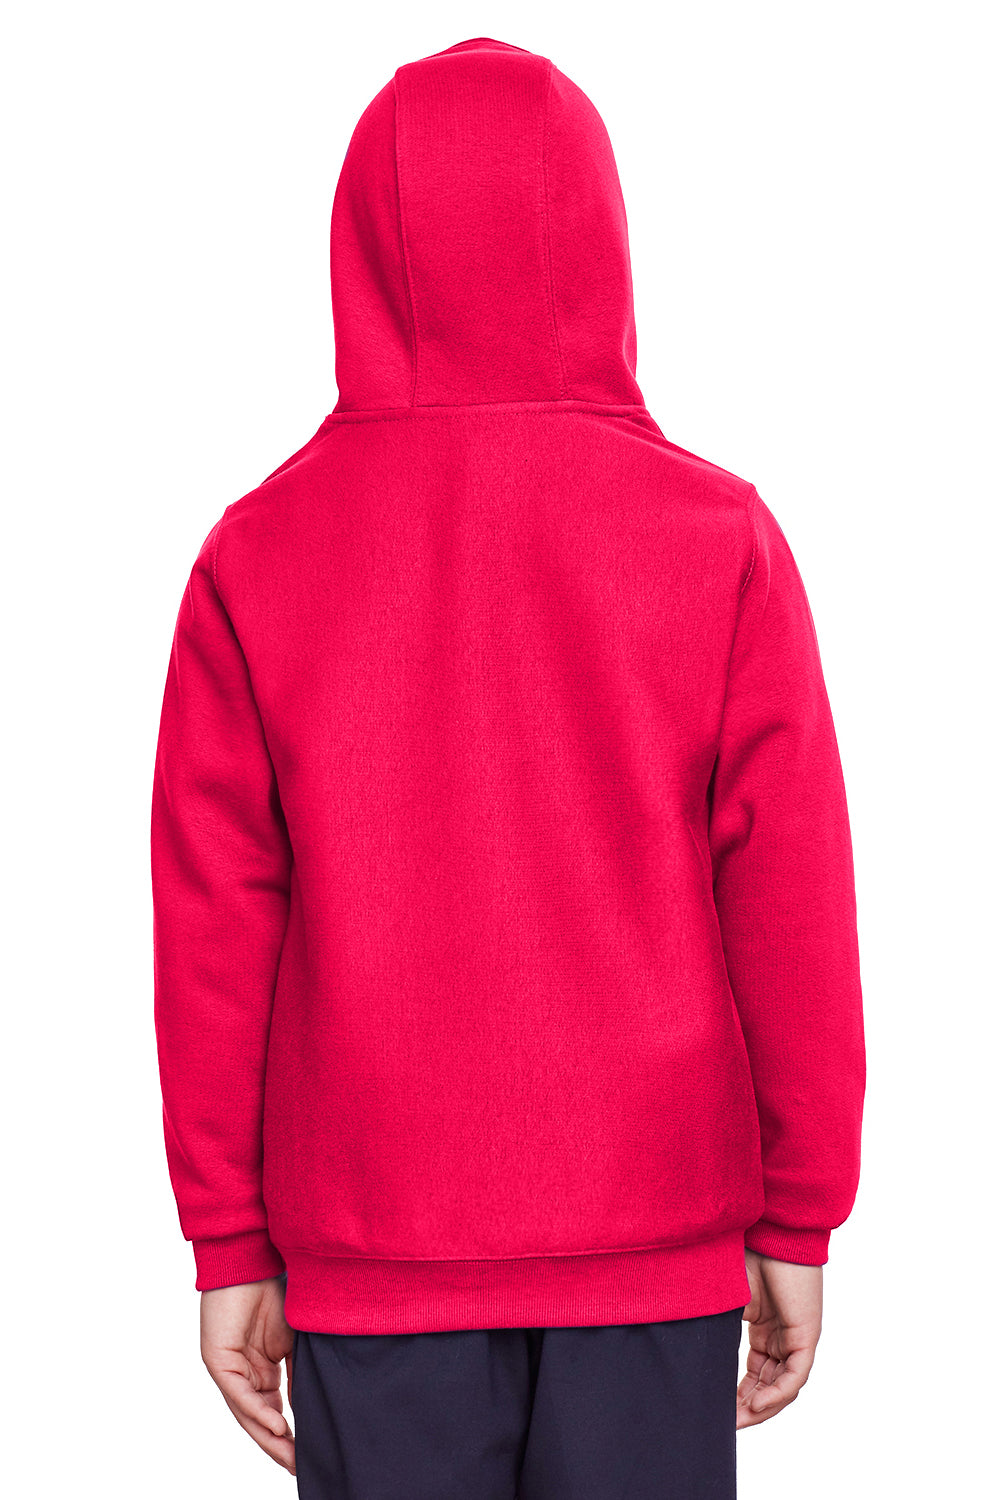 Team 365 TT96Y Youth Zone HydroSport Fleece Water Resistant Hooded Sweatshirt Hoodie Red Back